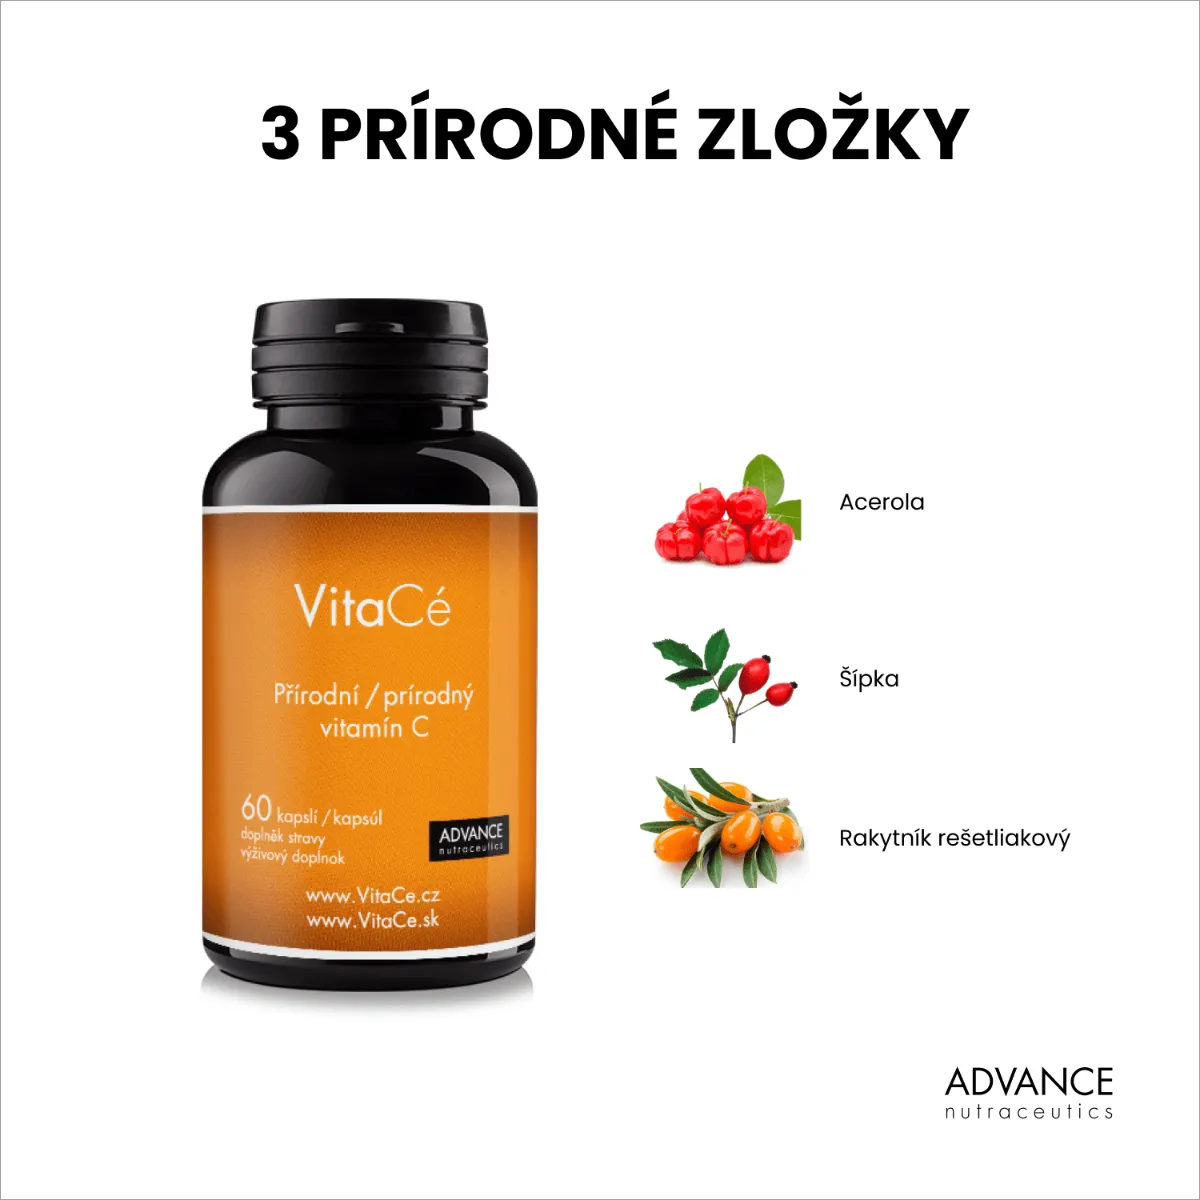 VitaCé ADVANCE 60 cps. najsilnejší prírodný vitamín C 1×60 cps, výživový doplnok